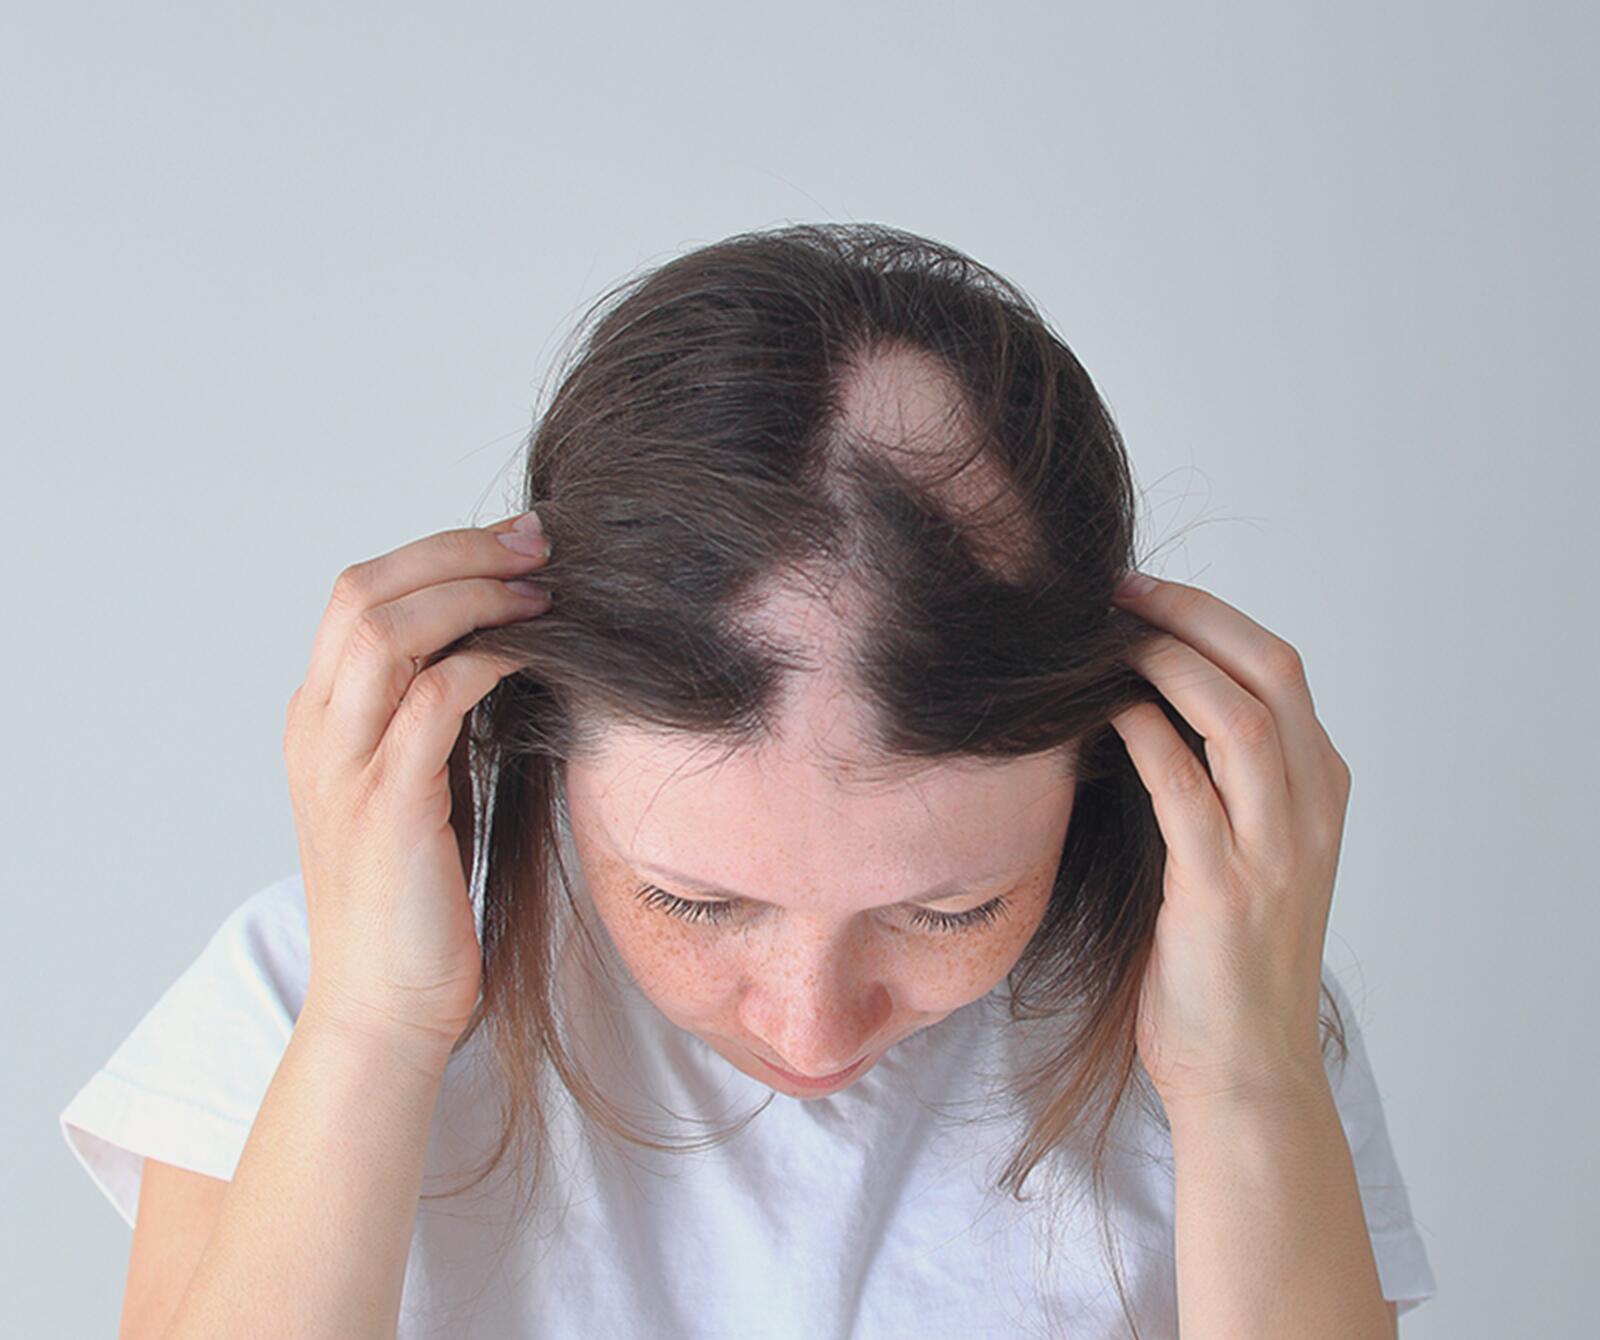 Dünne Haare und Haarausfall bei Frauen: Ursachen und Behandlungsmöglichkeiten